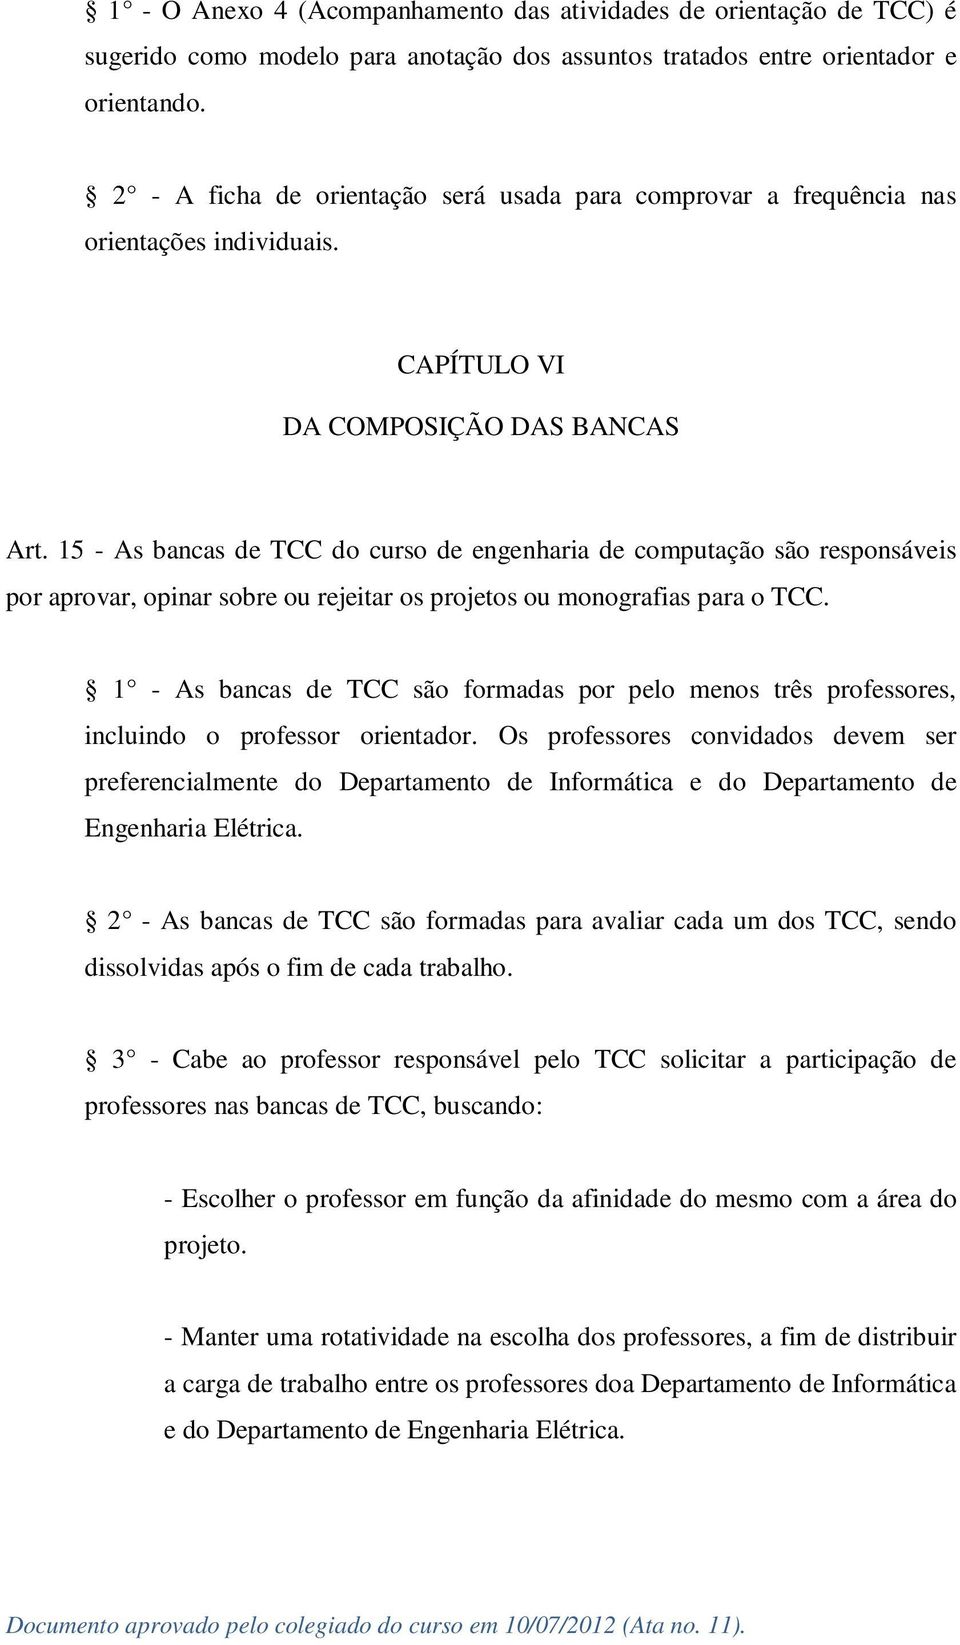 15 - As bancas de TCC do curso de engenharia de computação são responsáveis por aprovar, opinar sobre ou rejeitar os projetos ou monografias para o TCC.